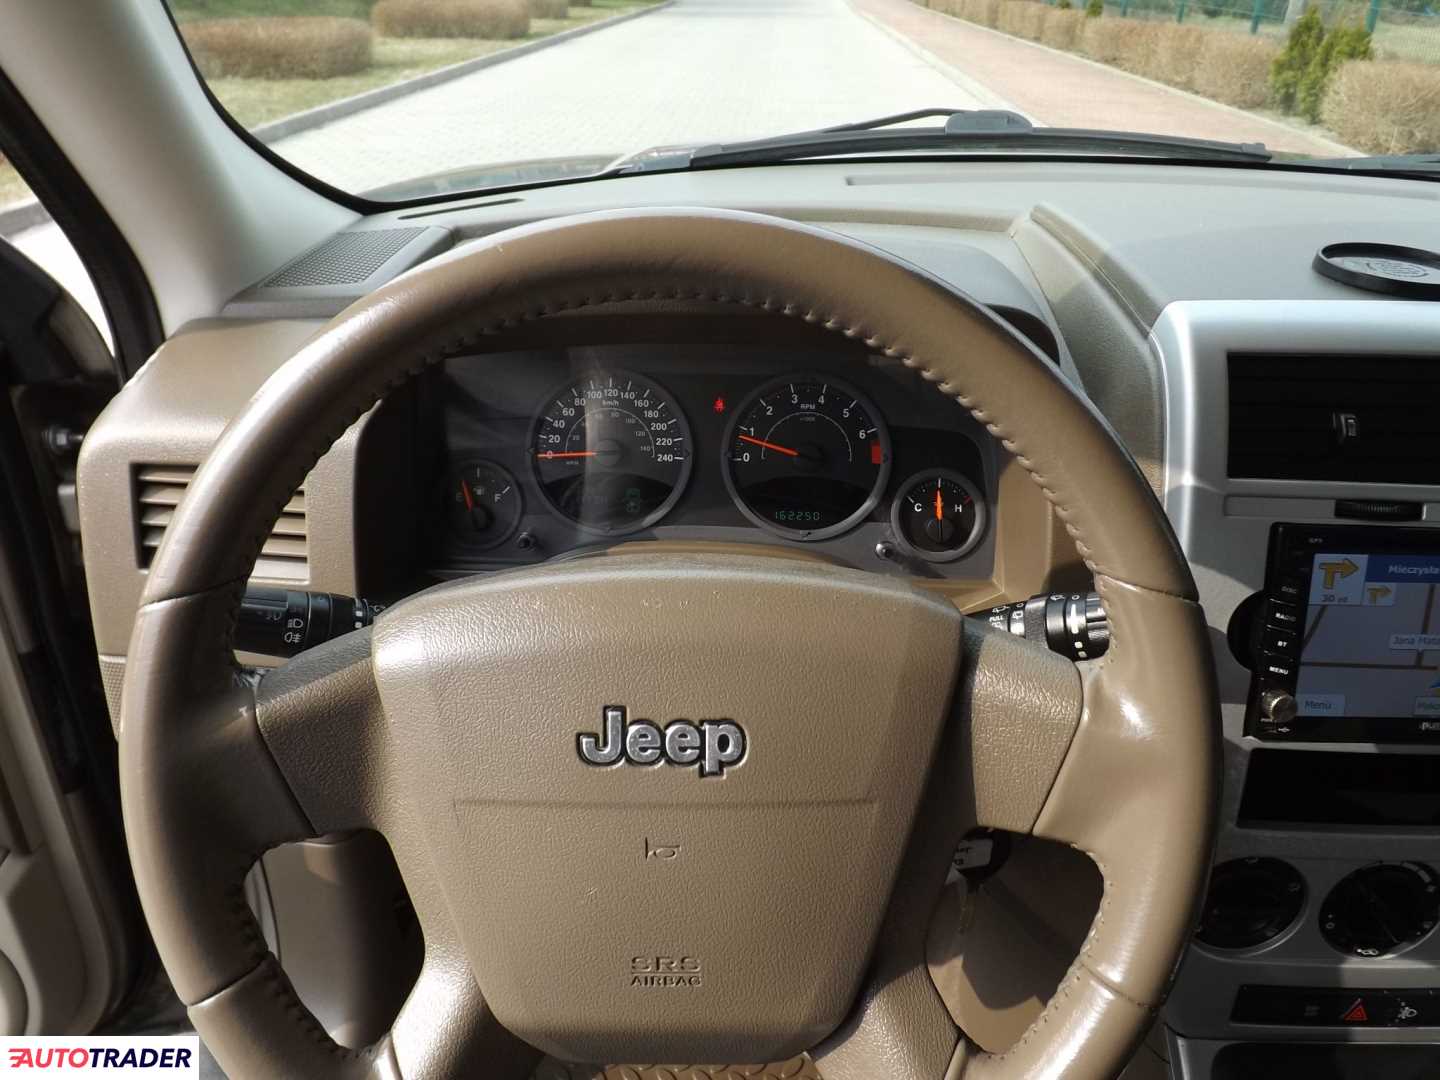 Jeep Patriot 2.4 benzyna 170 KM 2009r. (Żyrardów